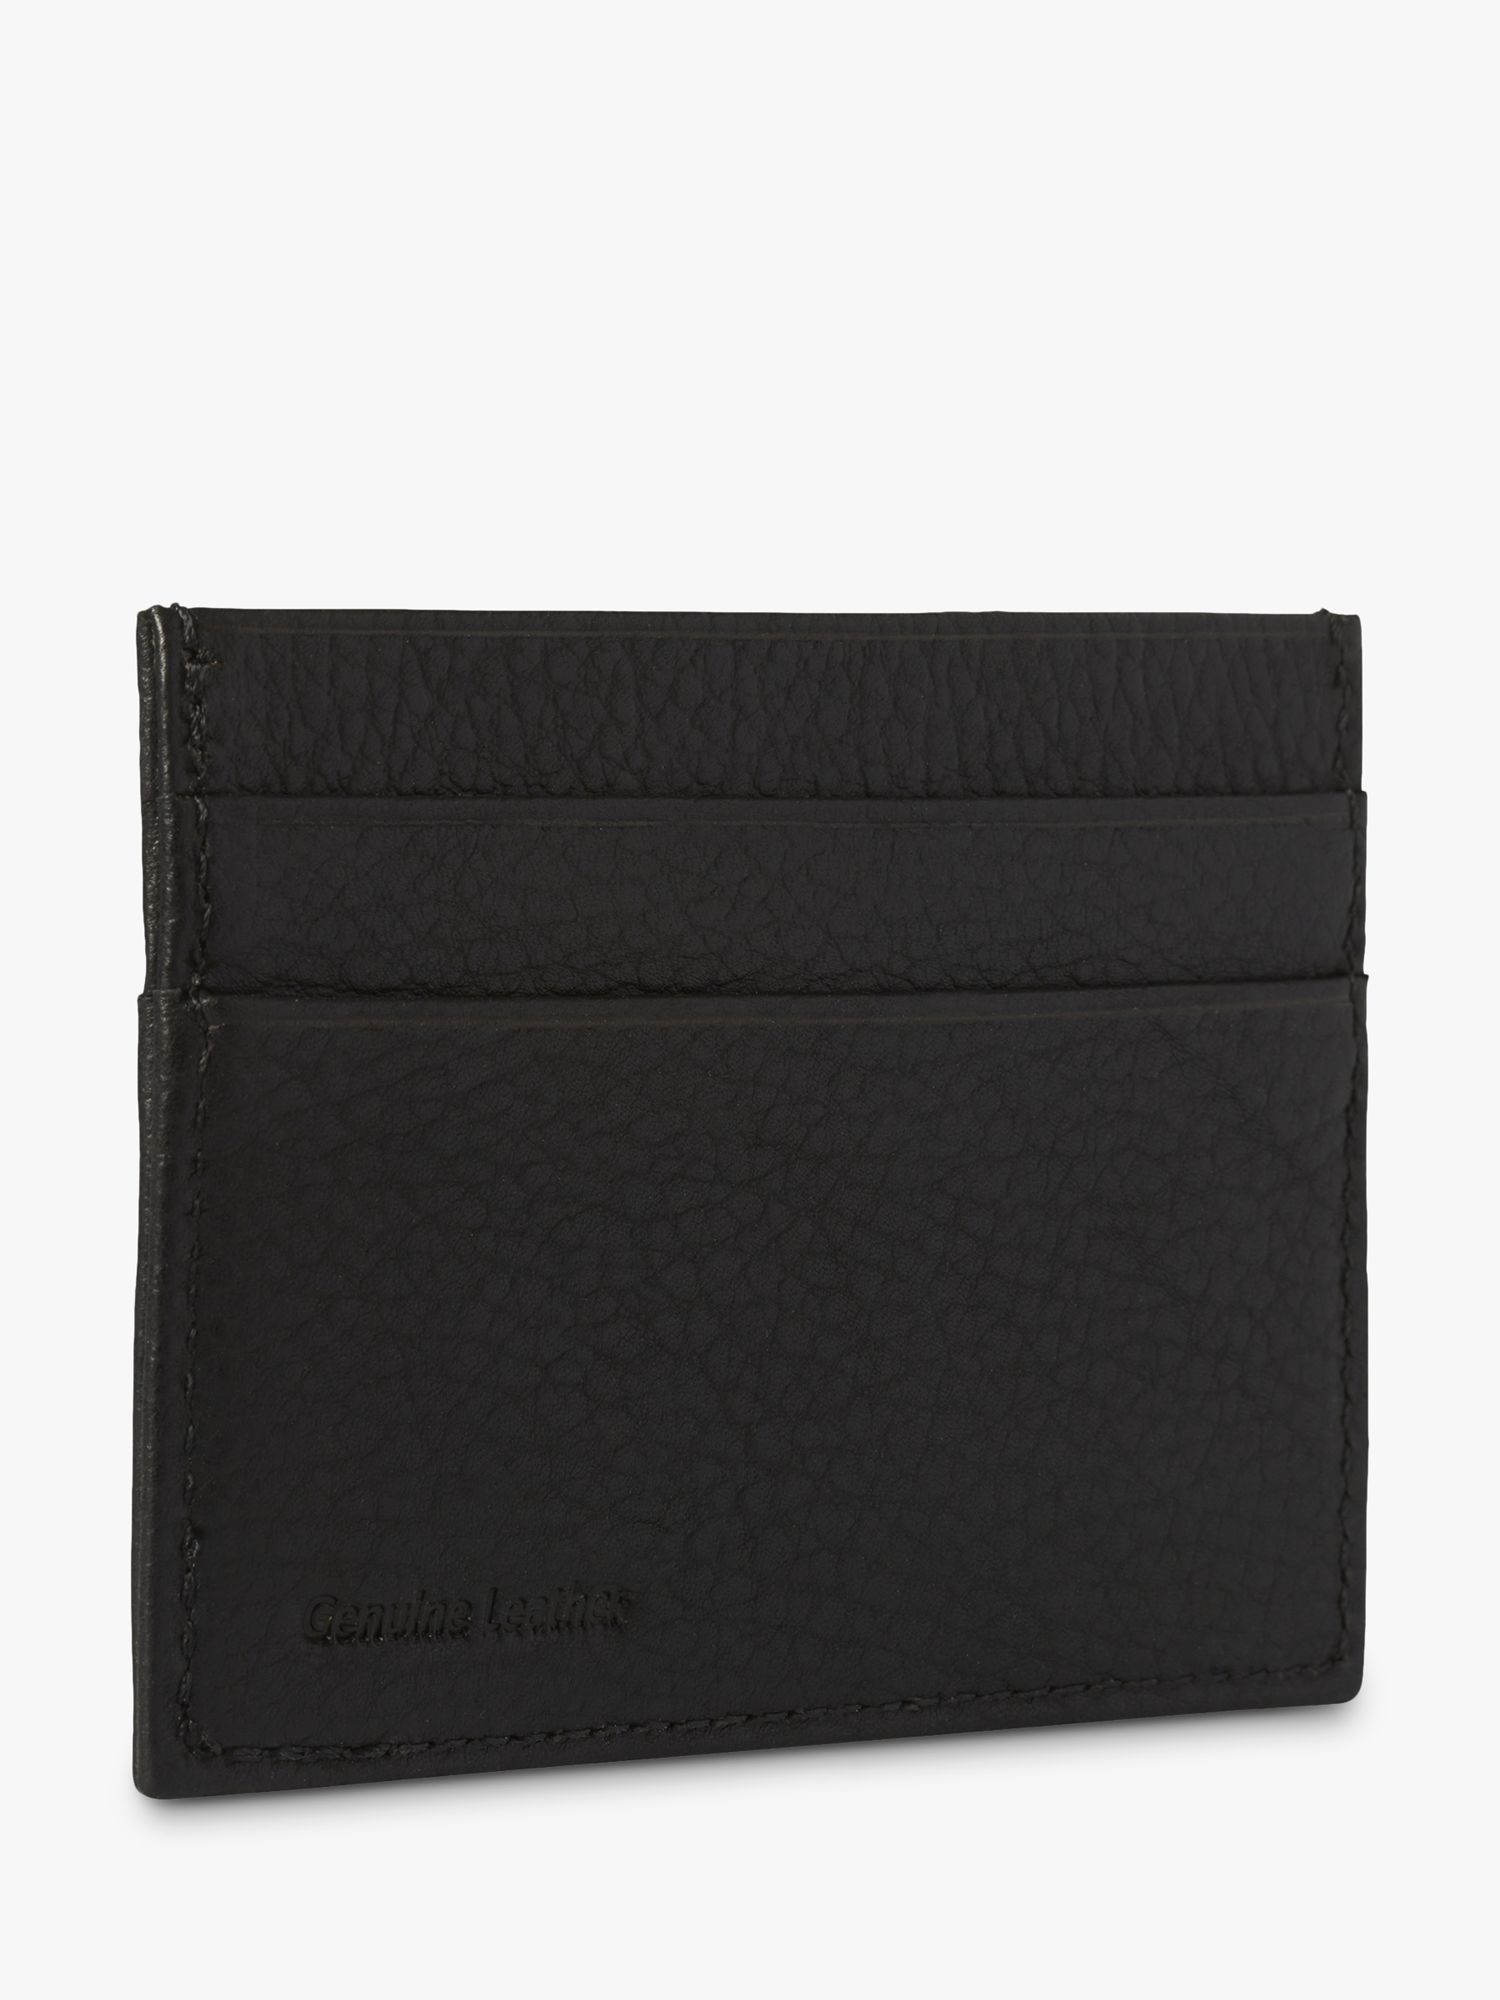 Simon Carter West End Leather Credit Card Holder, Black, Black